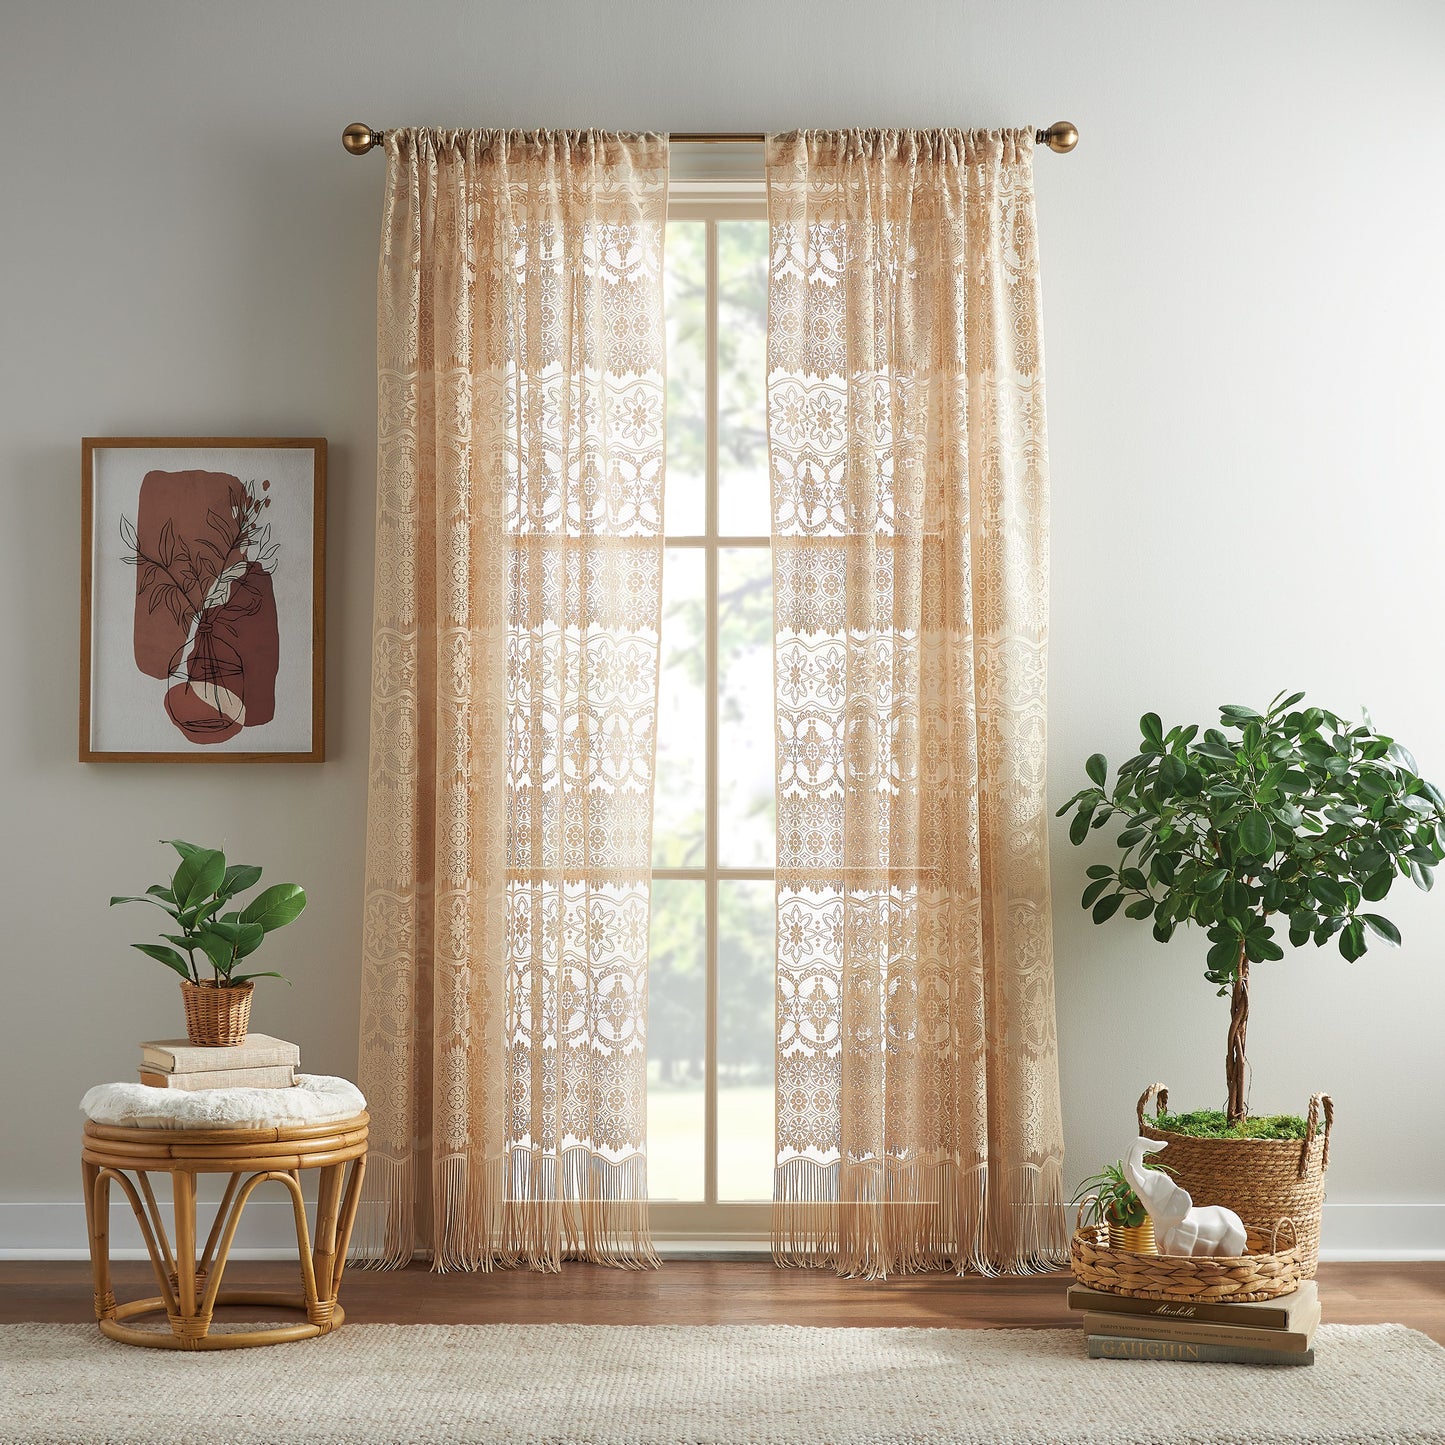 Peri Home Boho Lace Curtain Panel